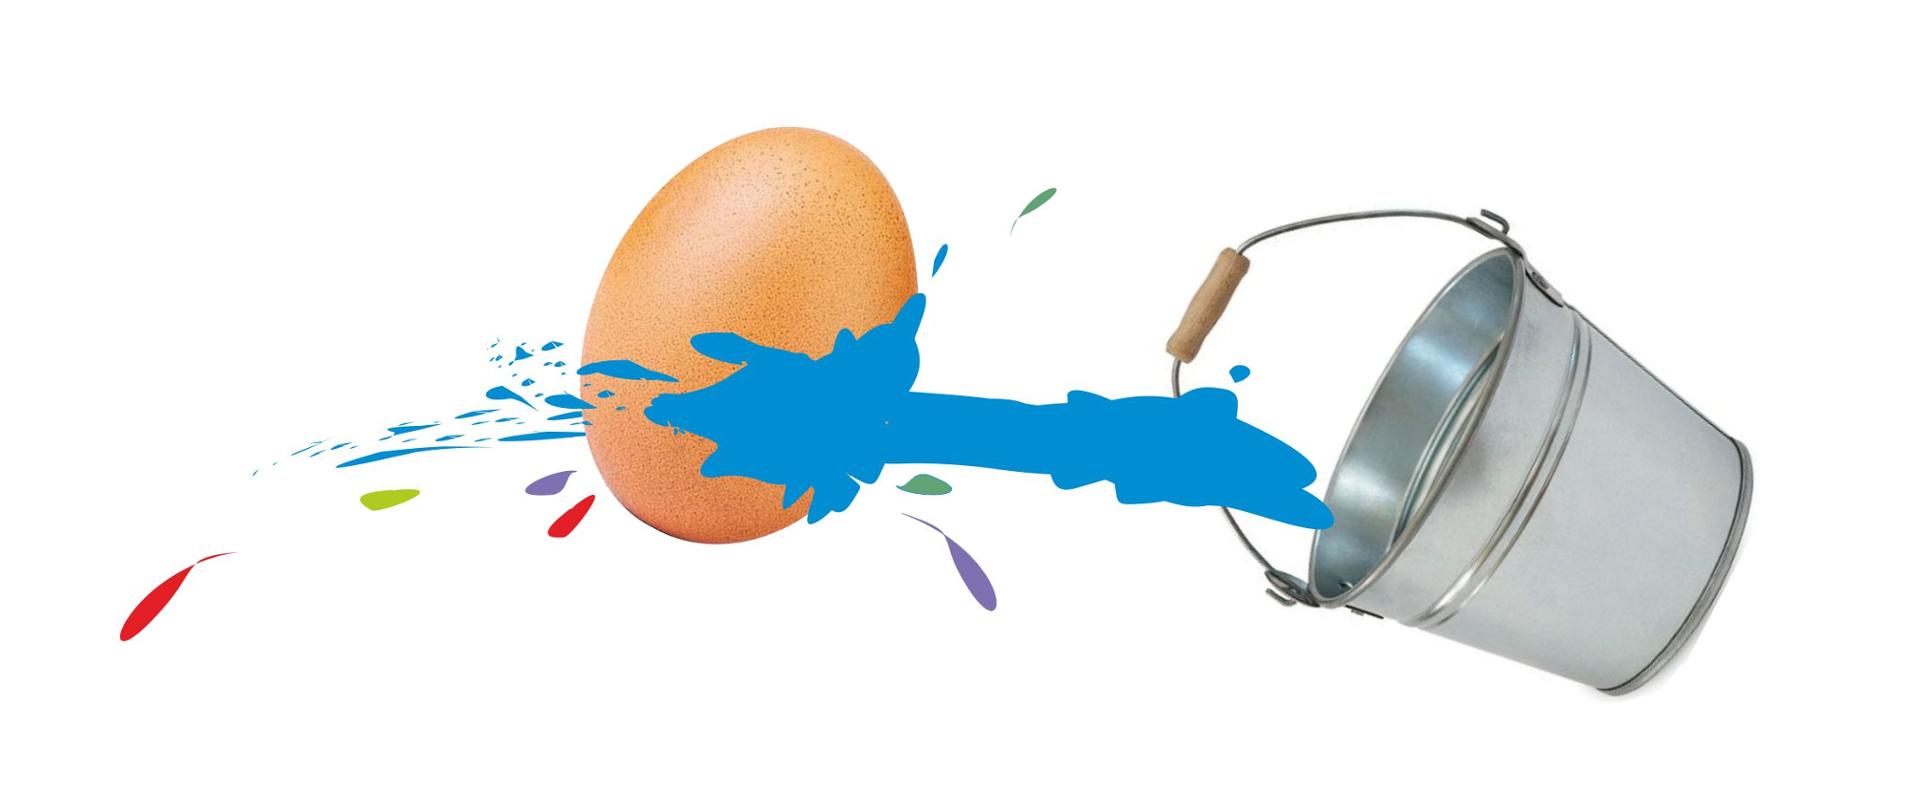 Grafika przedstawiająca realistyczne wiadro oblewające niebieską i różnokolorową cieczą realistycznie przedstawione jajko. Wszystko umiejscowione na białym tle.